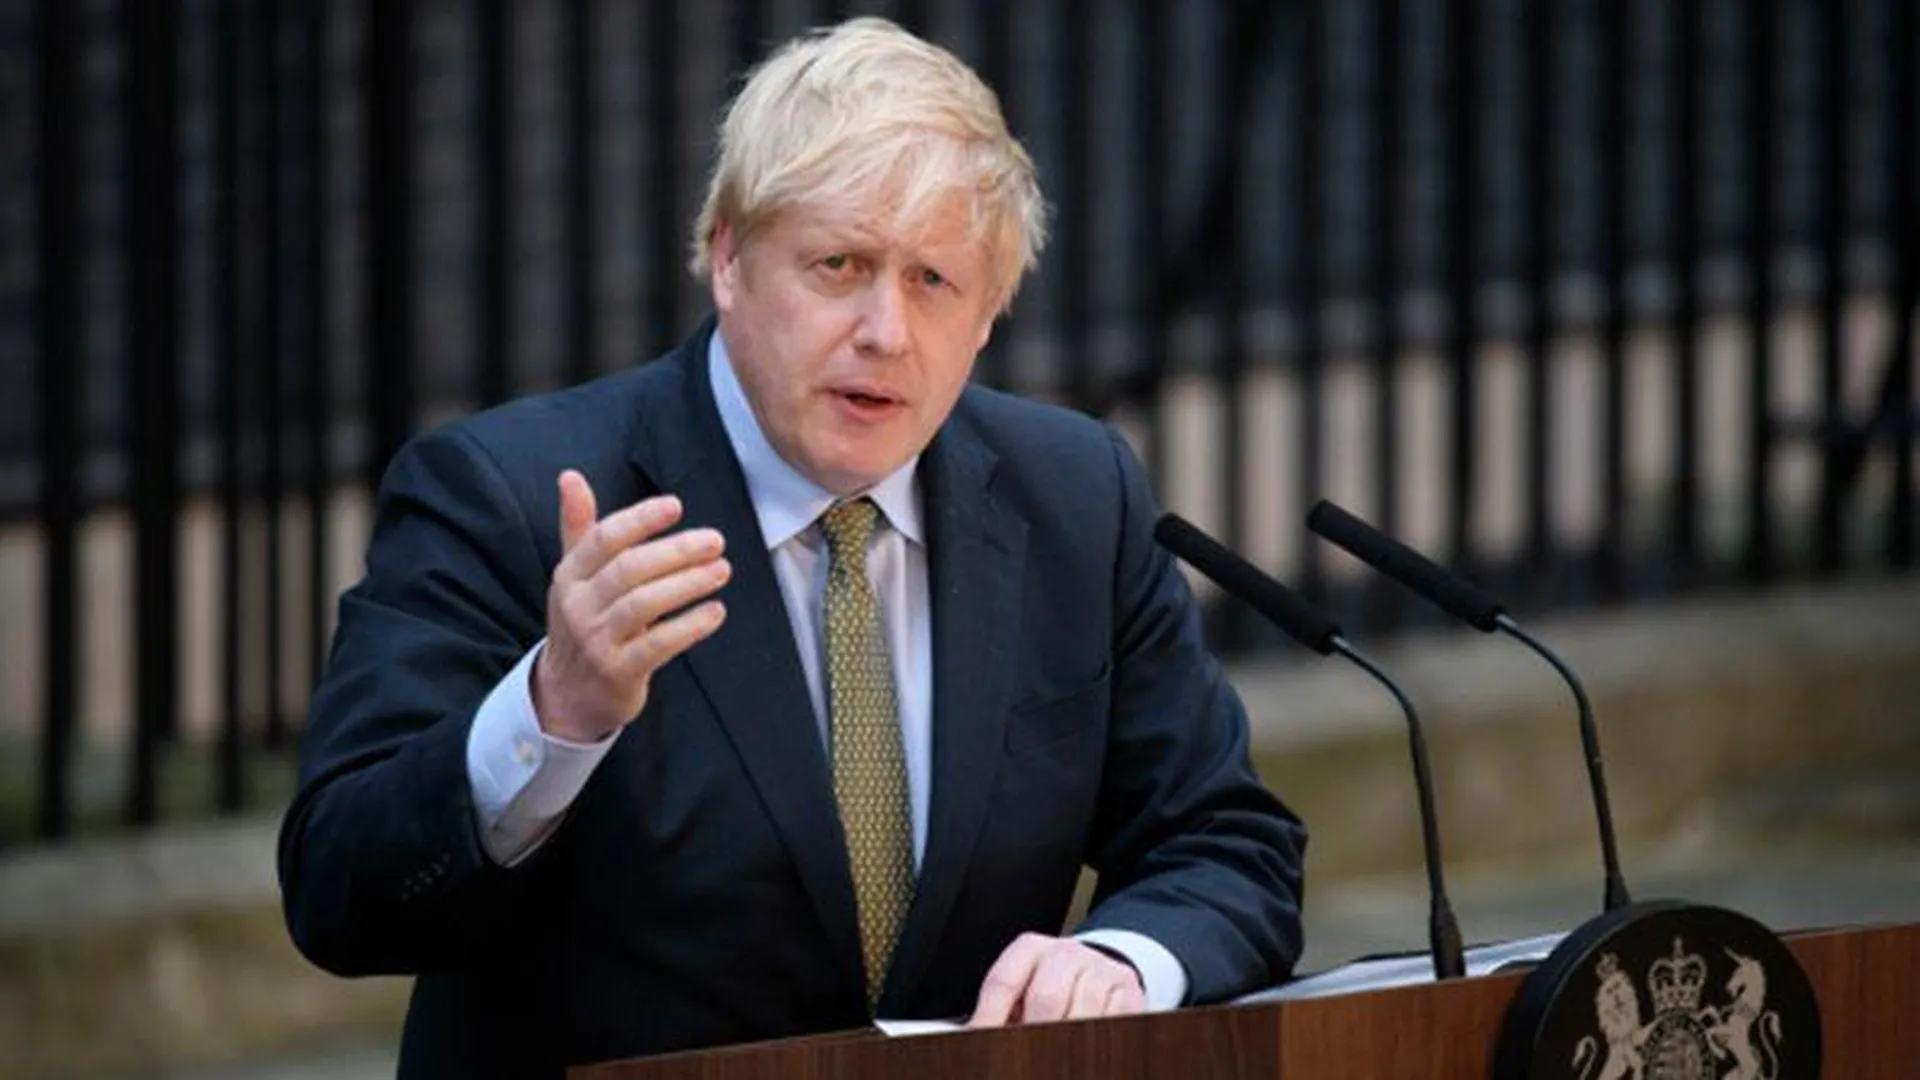 Борис Джонсон возглавил авантюру с украинским конфликтом в отместку ЕС — мнение политолога